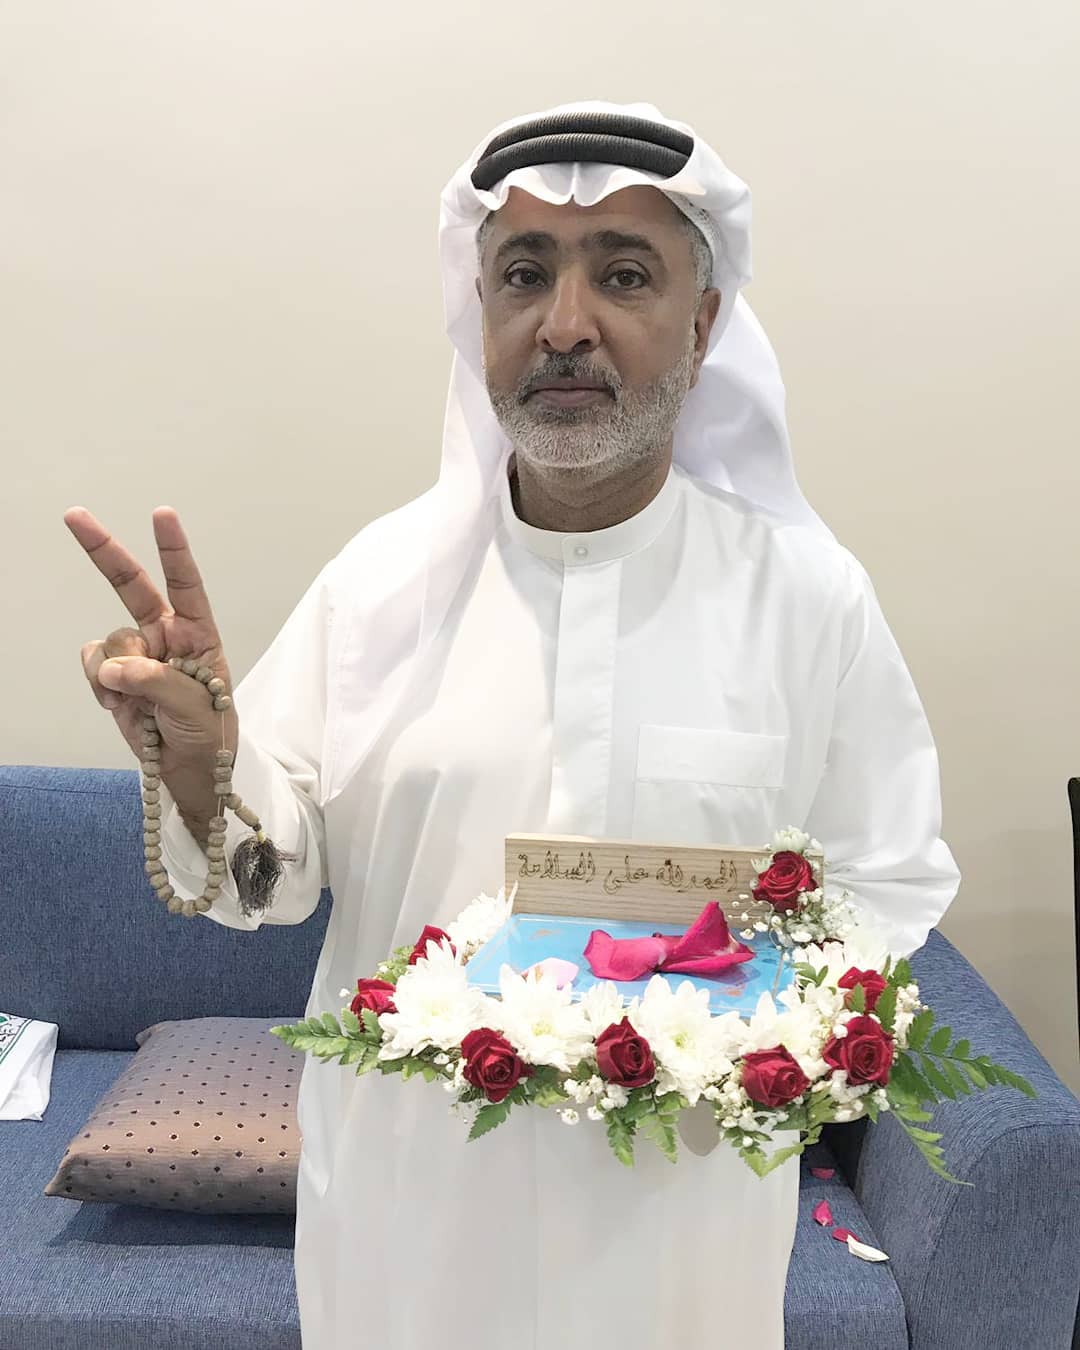  الدكتور إبراهيم العرادي: سبّ الذات الإلهيّة هو عقيدة وزارة الداخليّة الخليفيّة في البحرين